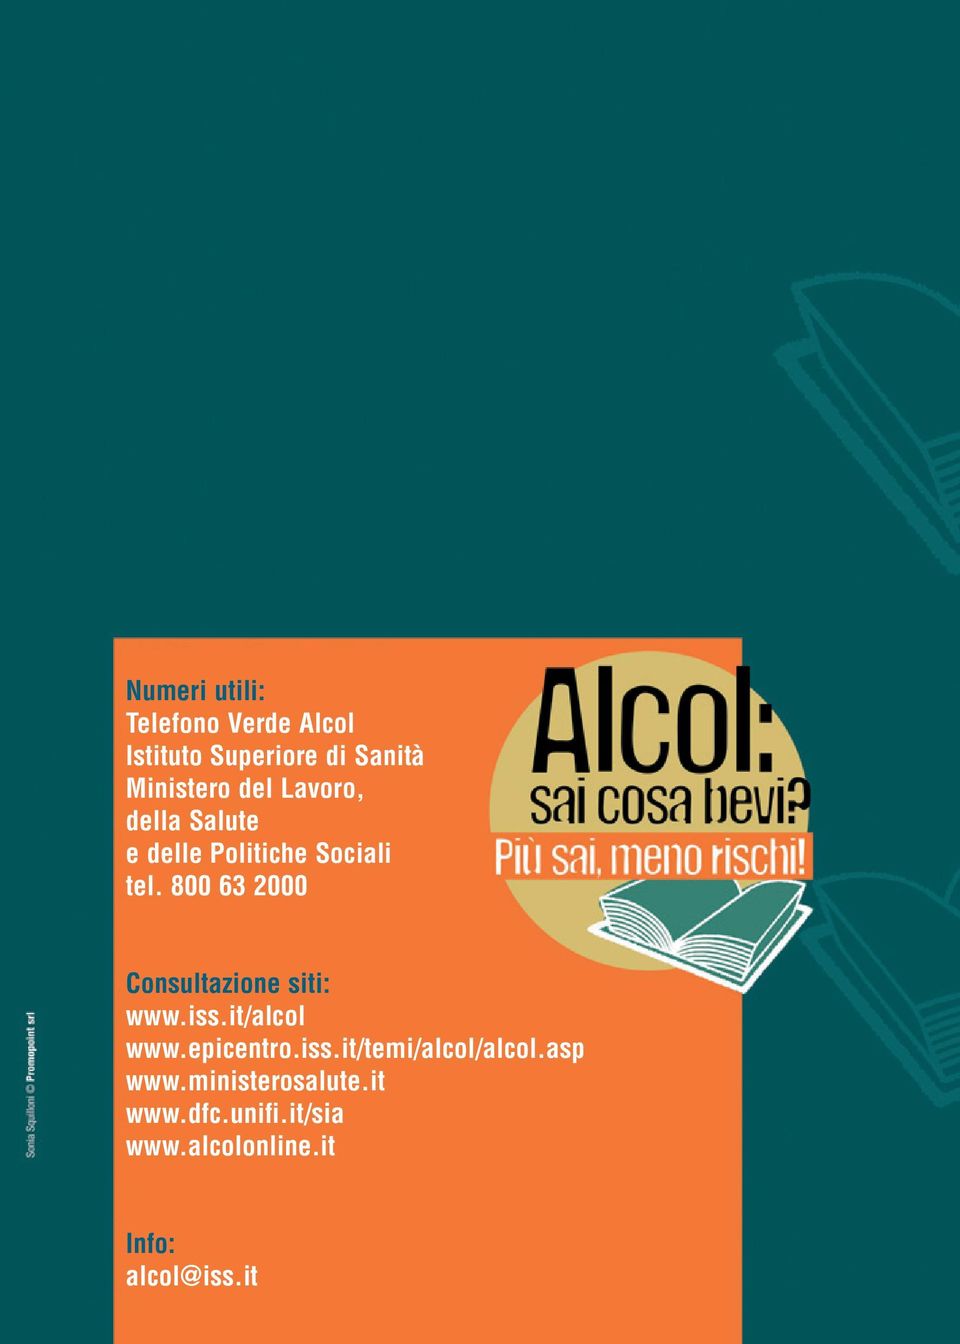 800 63 2000 Consultazione siti: www.iss.it/alcol www.epicentro.iss.it/temi/alcol/alcol.